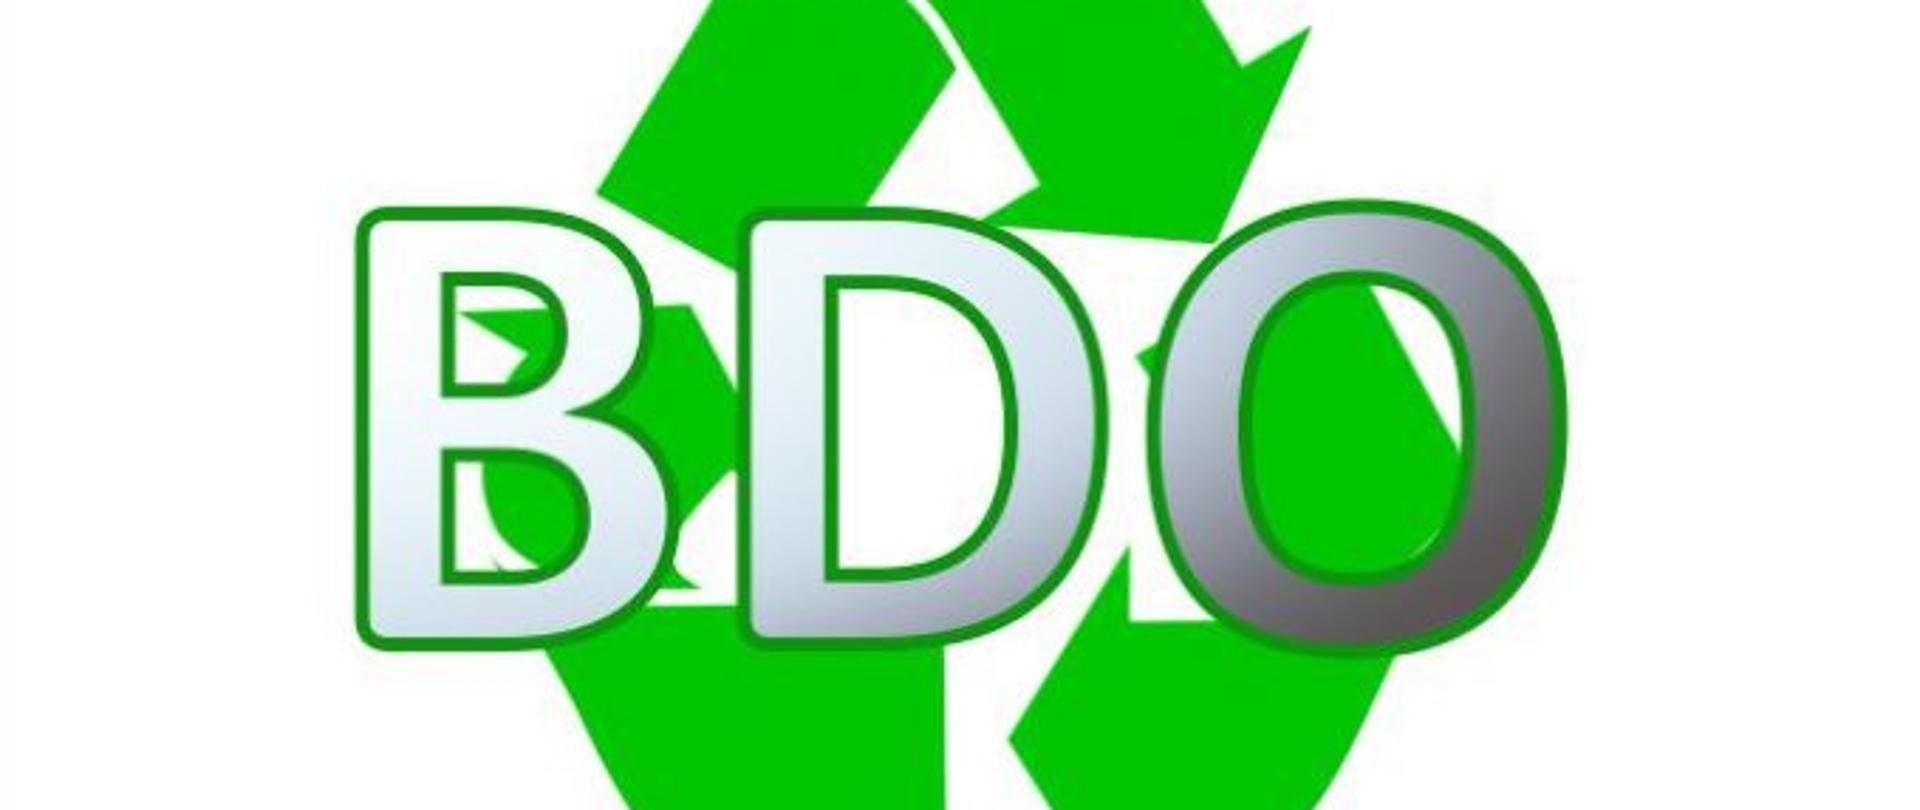 BDO-logo